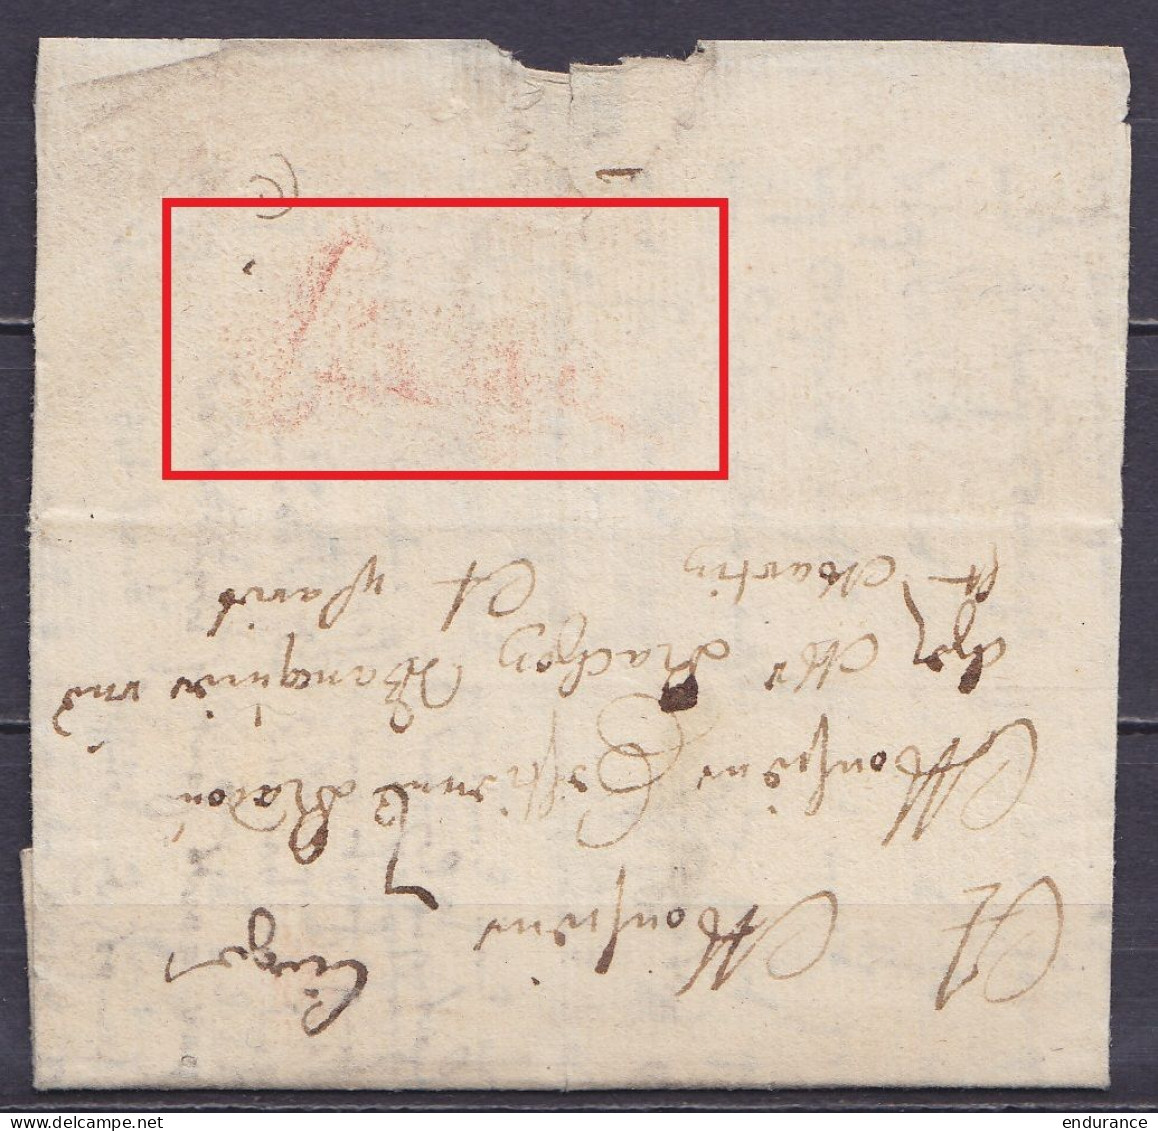 L. Datée 6 Octobre 1670 De LIEGE Pour Banquier à PARIS - Au Dos: Inscription Man. "Liege" à La Craie Rouge  & "Liège" à  - 1621-1713 (Países Bajos Españoles)